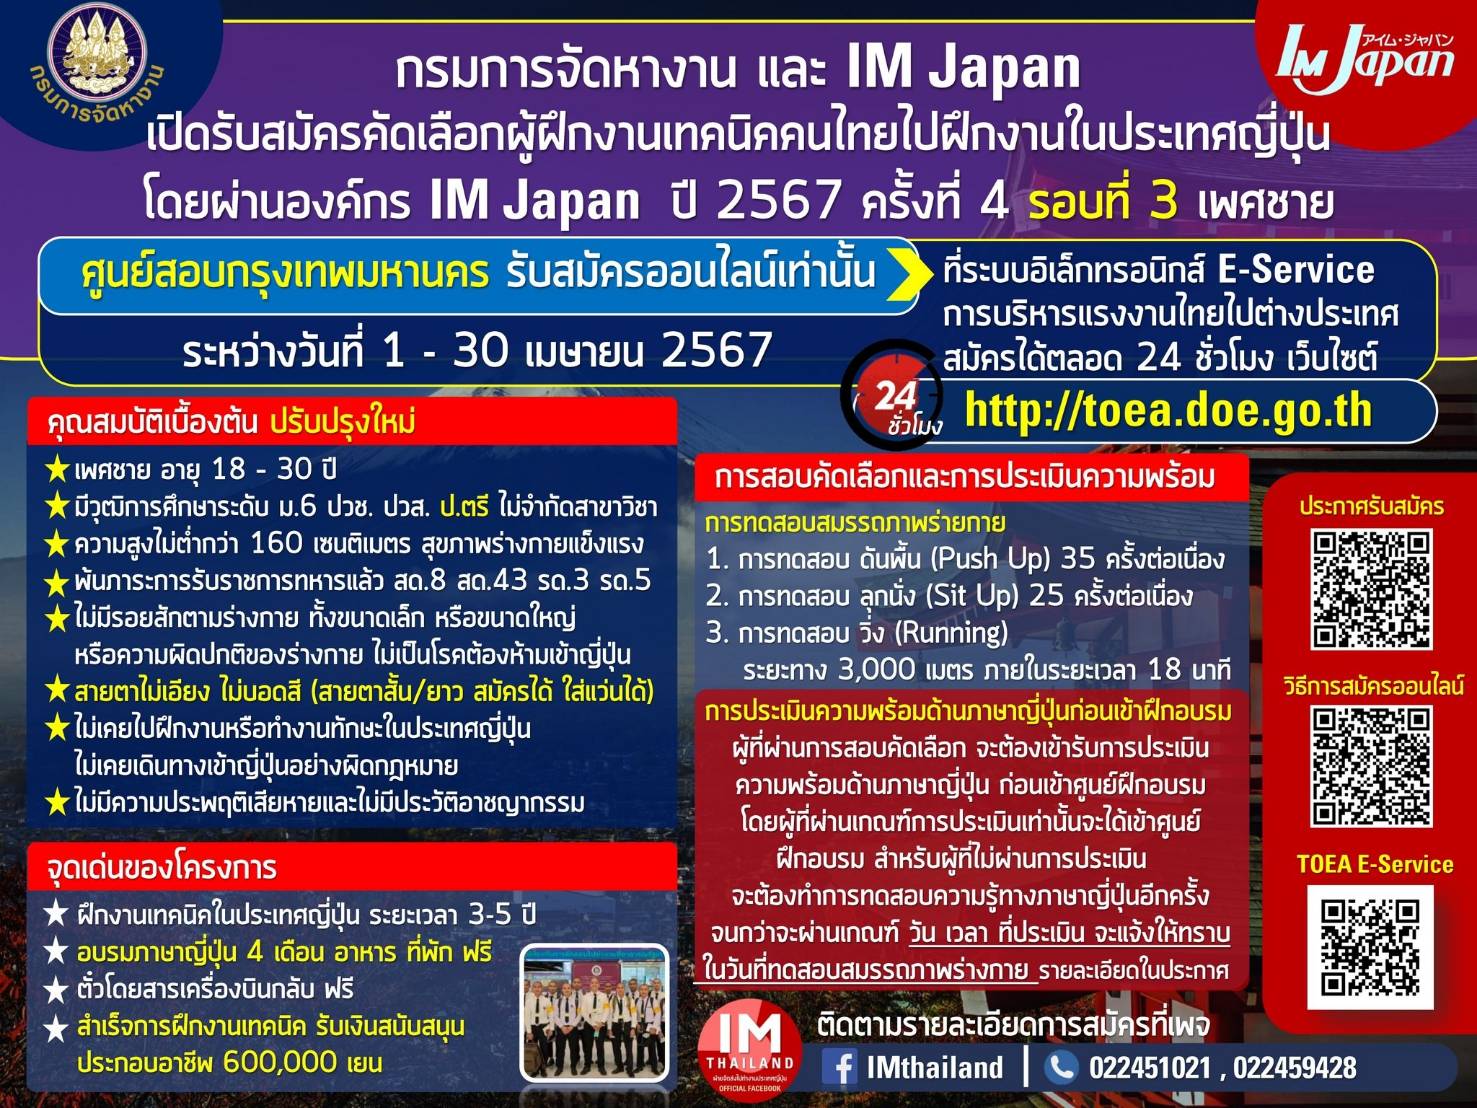 ผู้ว่าราชการจังหวัดแพร่ เชิญชวนแรงงานไทยสมัครไปฝึกงานในประเทศญี่ปุ่นโดยผ่านองค์กร IM Japan ตั้งแต่บัดนี้ – 30 เมษายน 2567